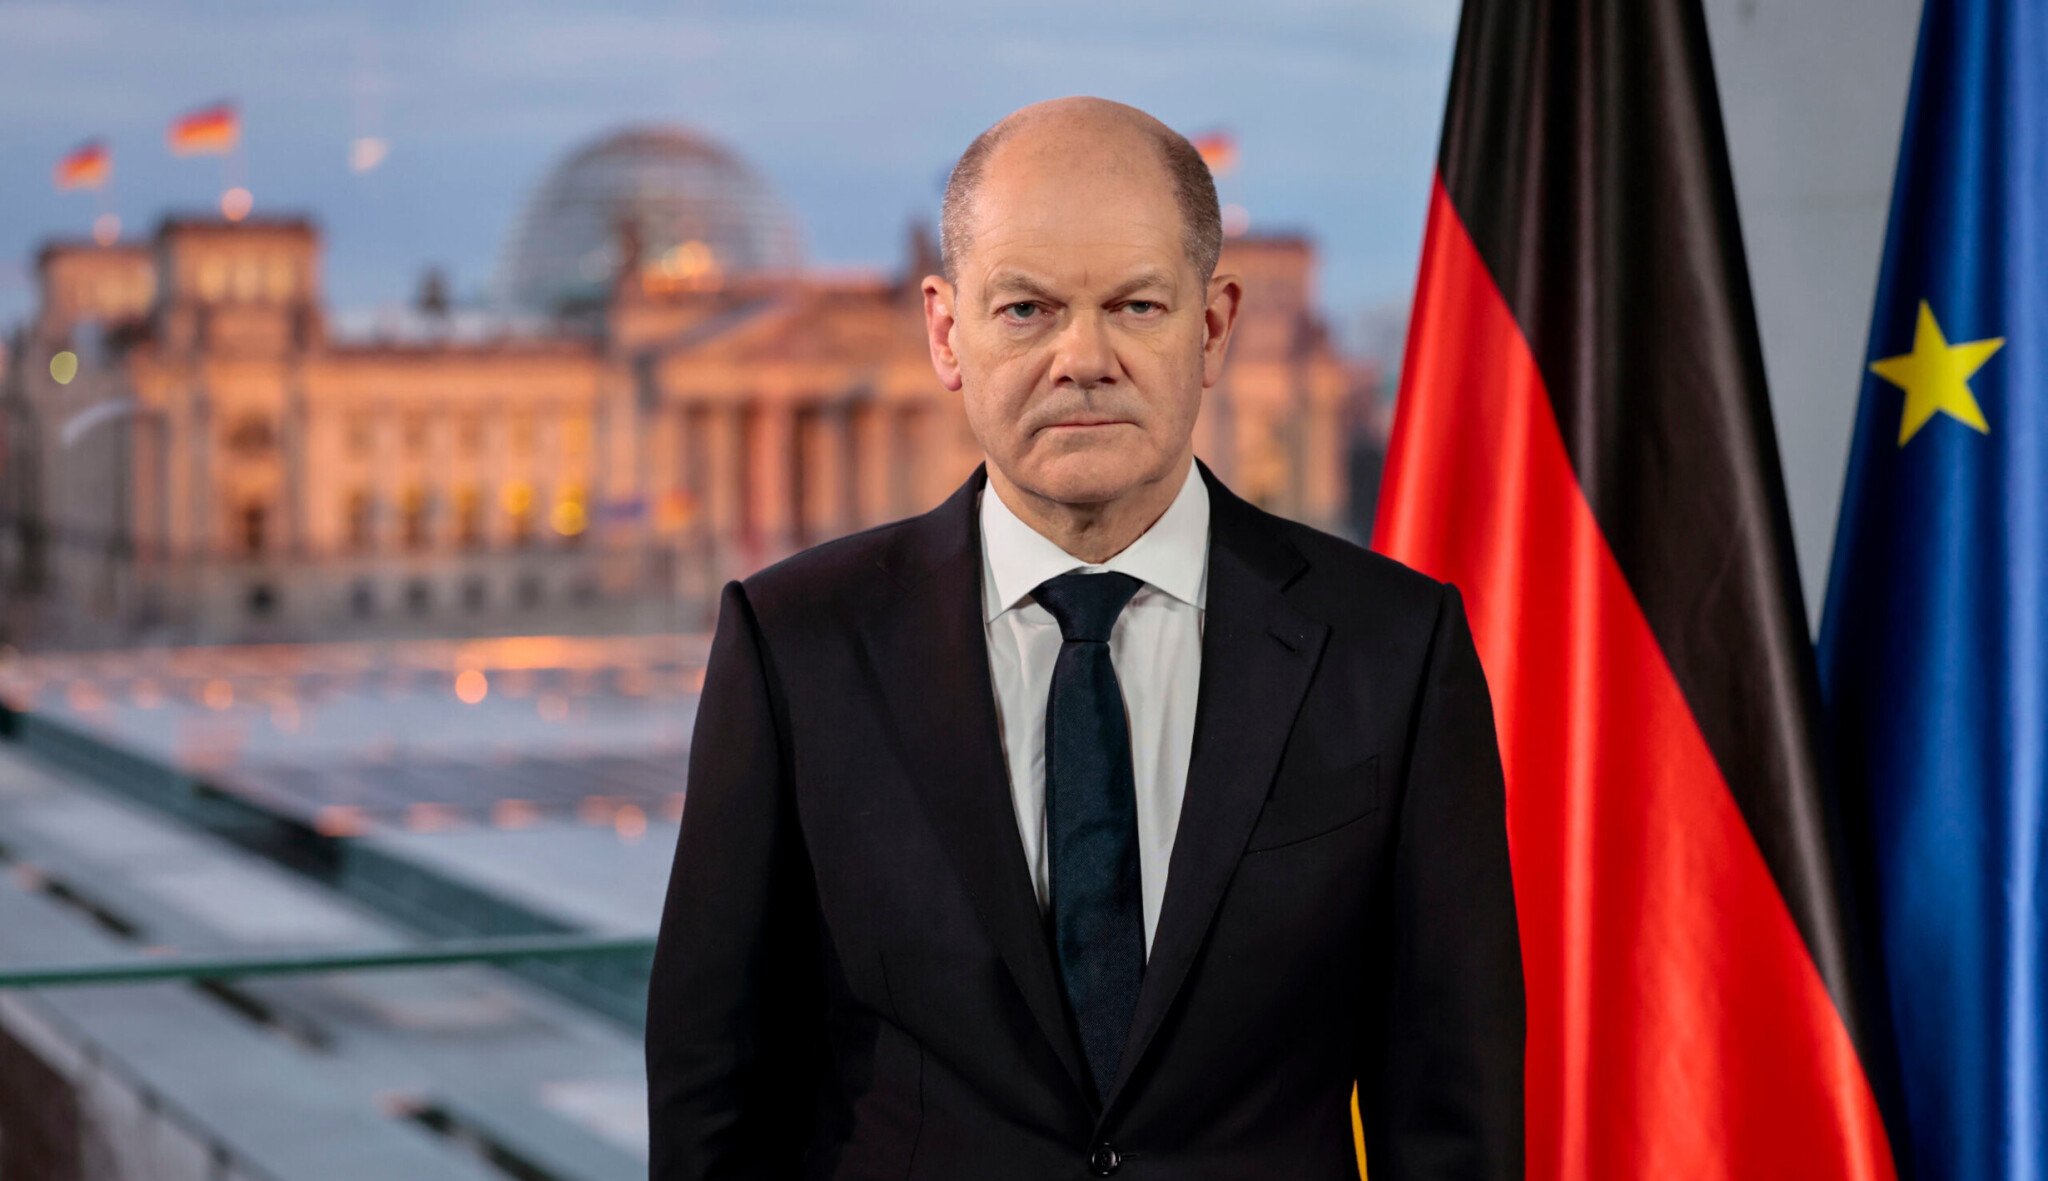 Němci se dohodli na rozpočtu. Dluh smáznou, podpoří Ukrajinu i klima